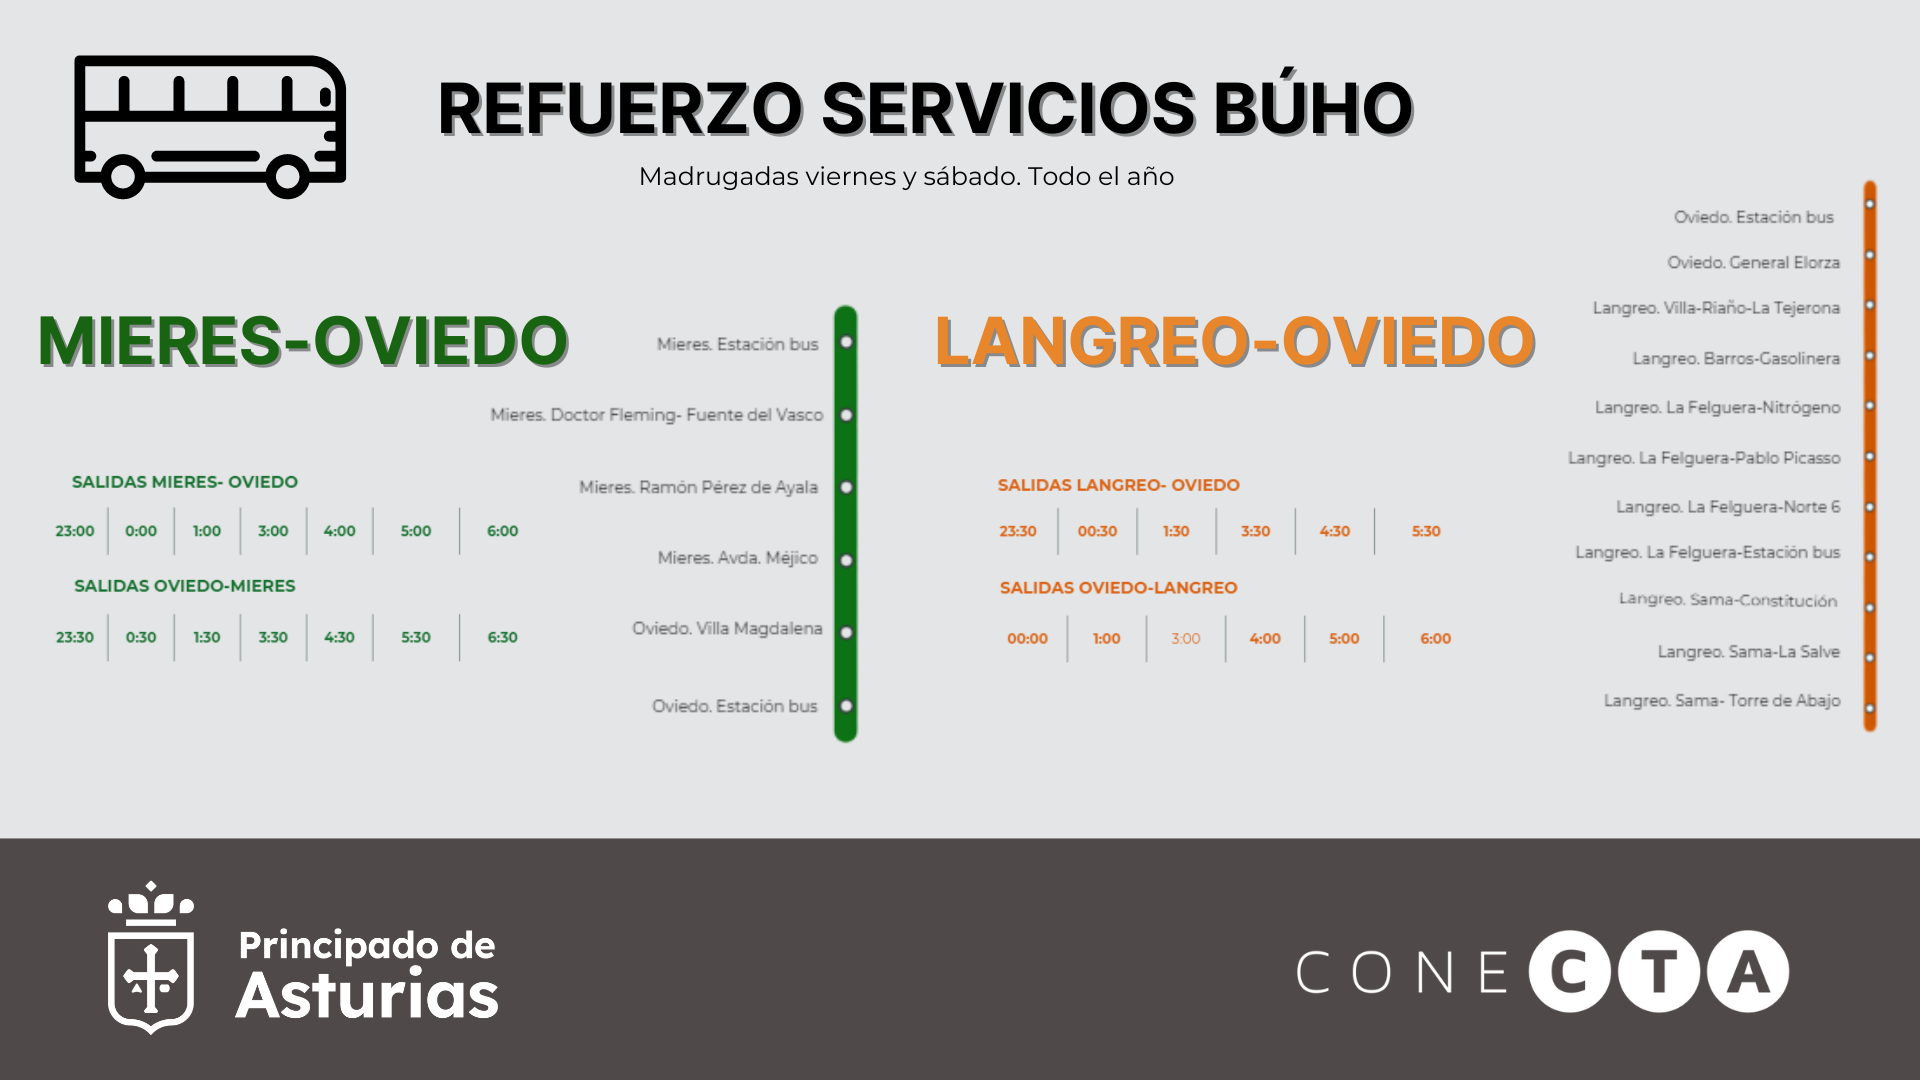 Imagen - El Gobierno de Asturias duplica los servicios de búho de Mieres y Langreo a Oviedo